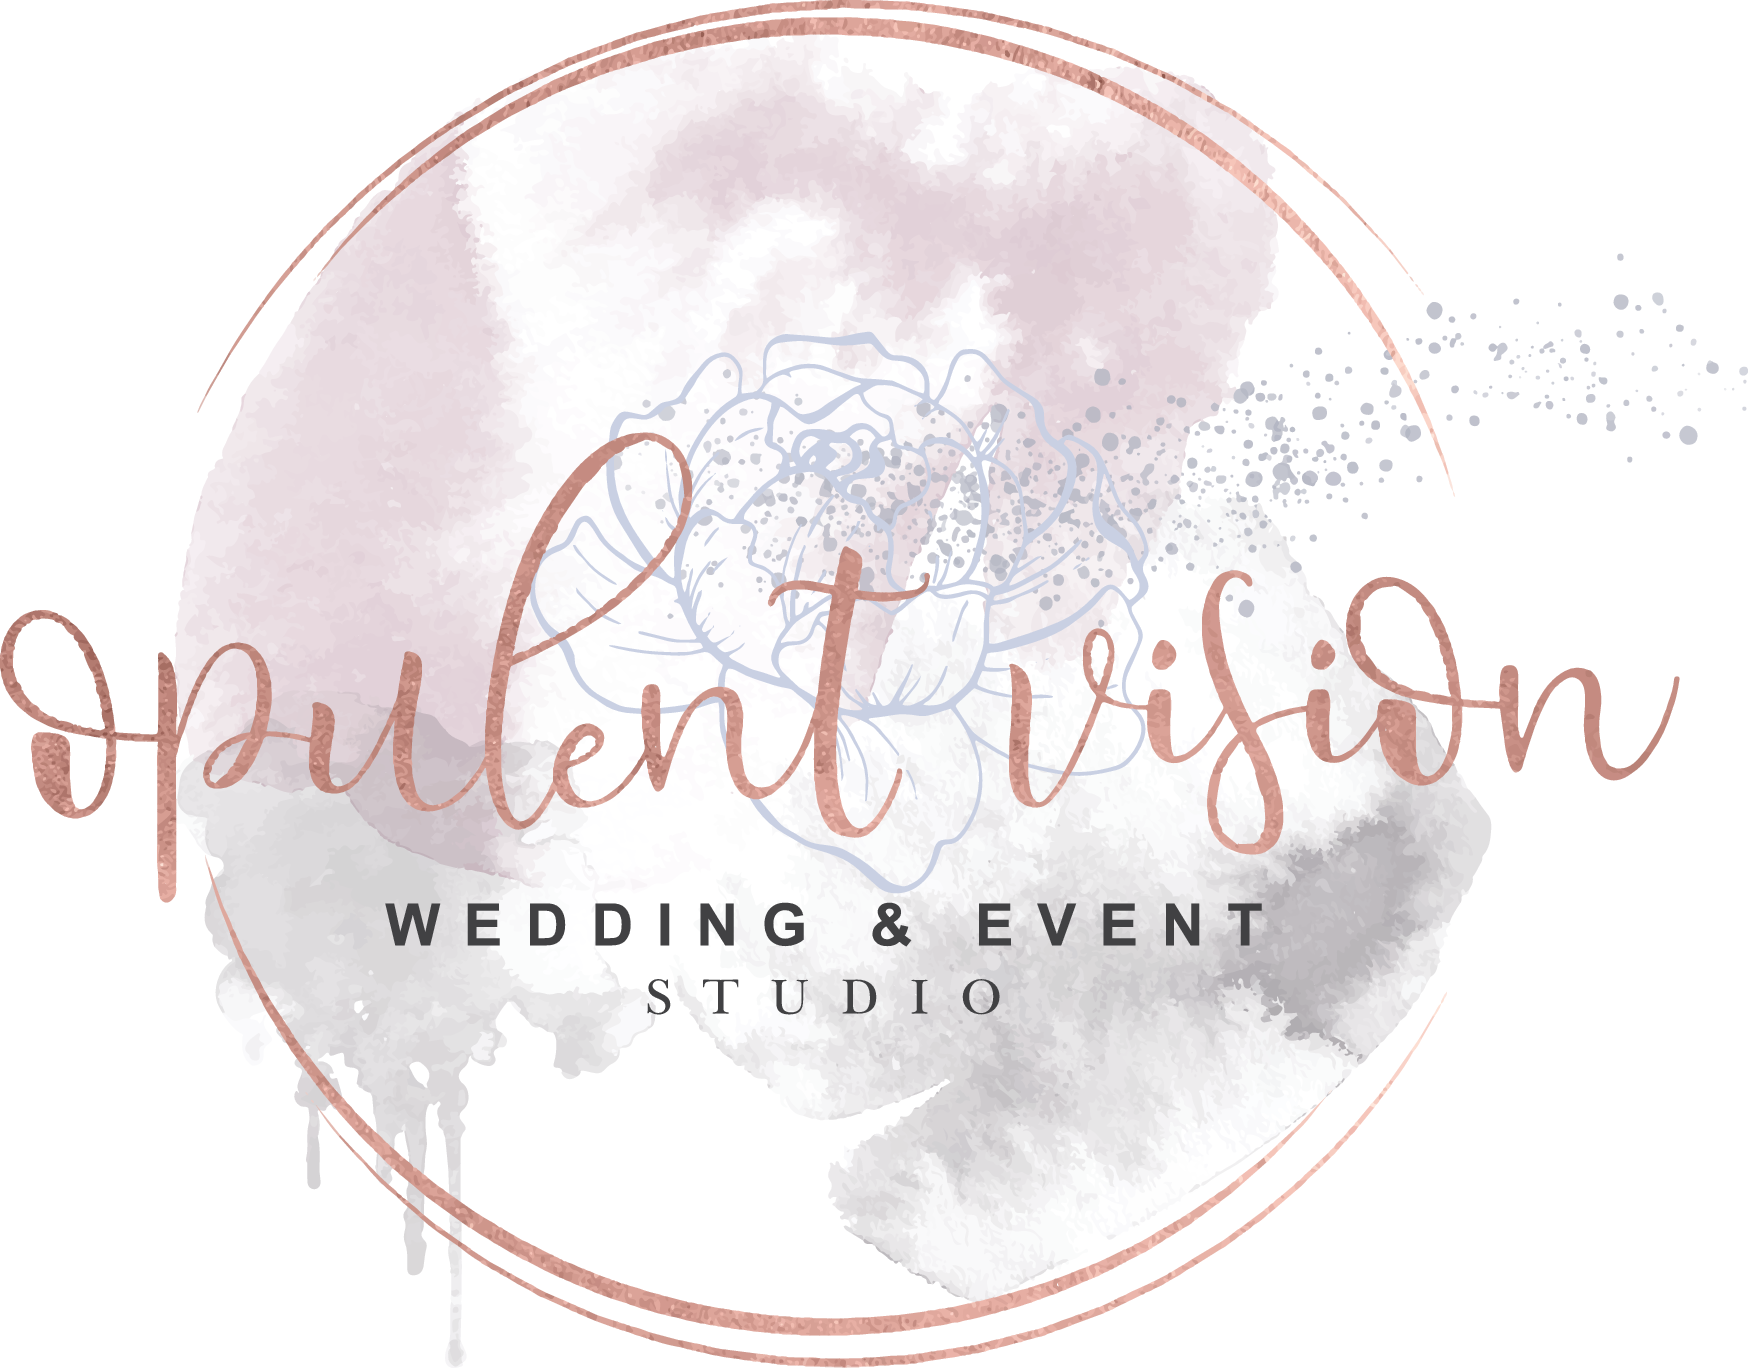 Opulent Vision Wedding & Event Studio